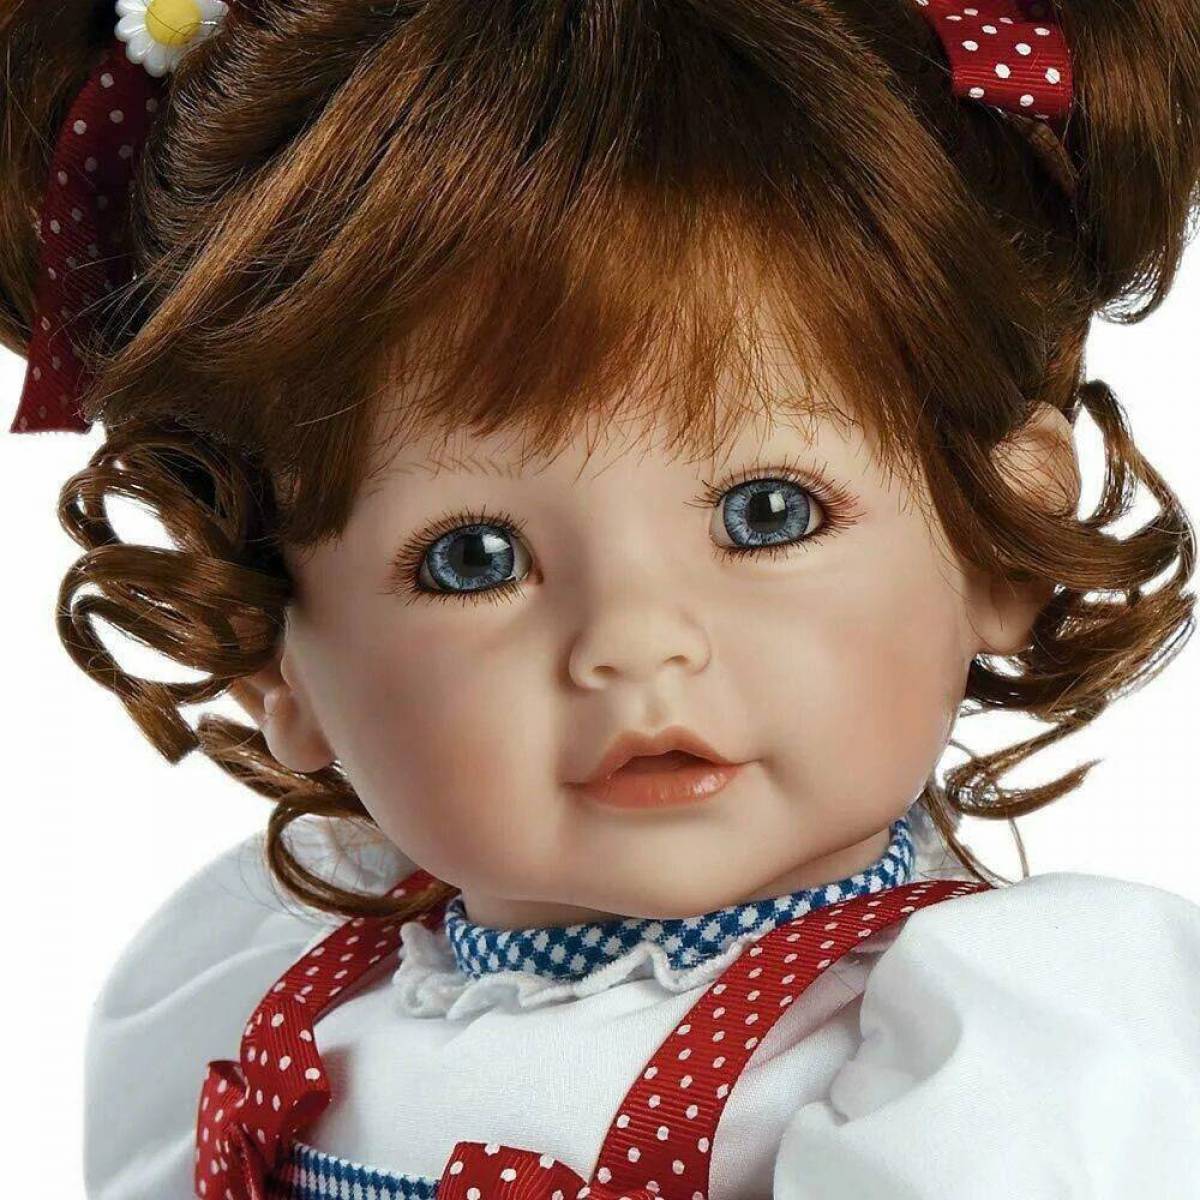 Doll картинка. Красивые куклы. Самые красивые куклы. Куклы для девочек. Красивые детские куклы.